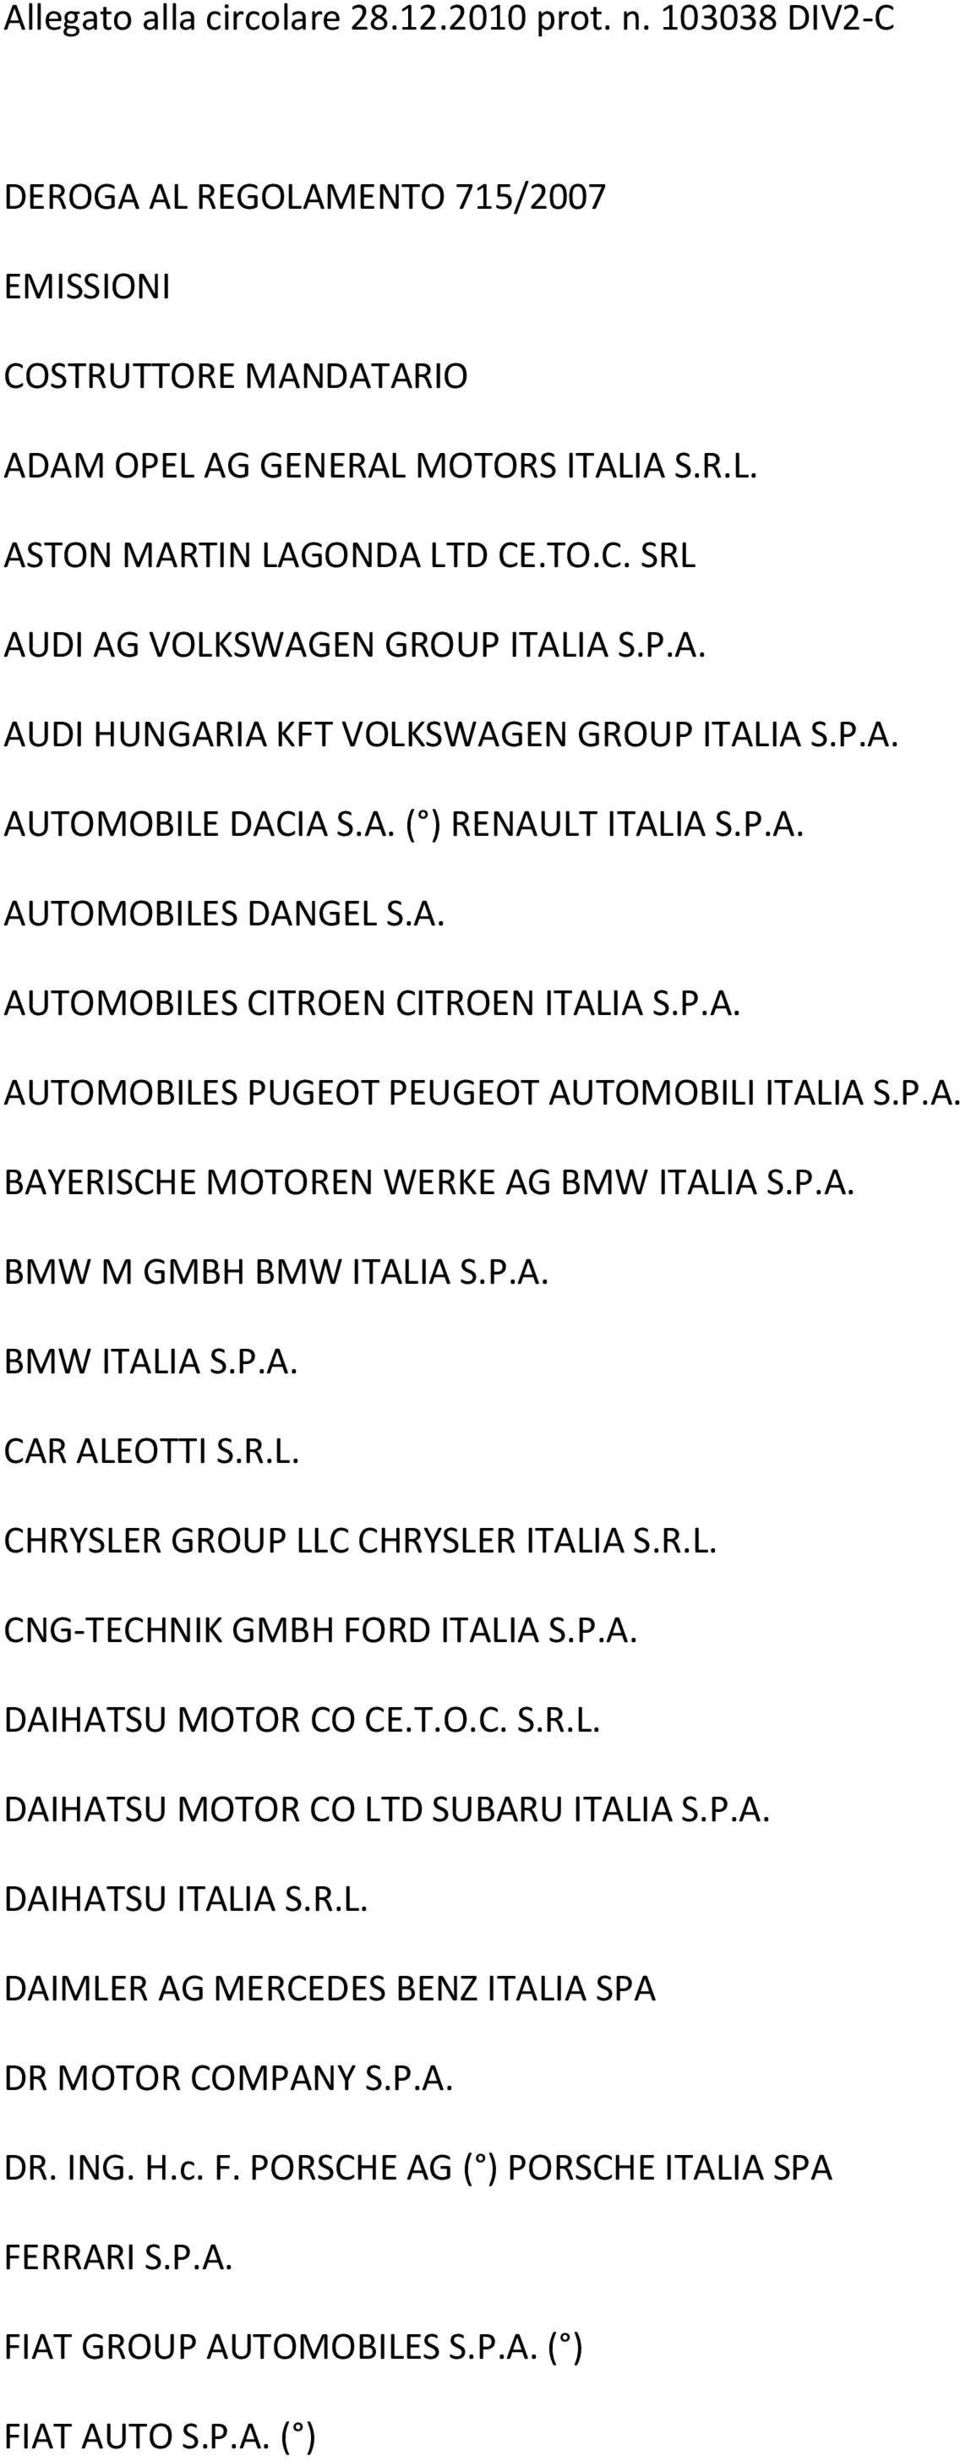 P.A. BAYERISCHE MOTOREN WERKE AG BMW ITALIA S.P.A. BMW M GMBH BMW ITALIA S.P.A. BMW ITALIA S.P.A. CAR ALEOTTI S.R.L. CHRYSLER GROUP LLC CHRYSLER ITALIA S.R.L. CNG-TECHNIK GMBH FORD ITALIA S.P.A. DAIHATSU MOTOR CO CE.